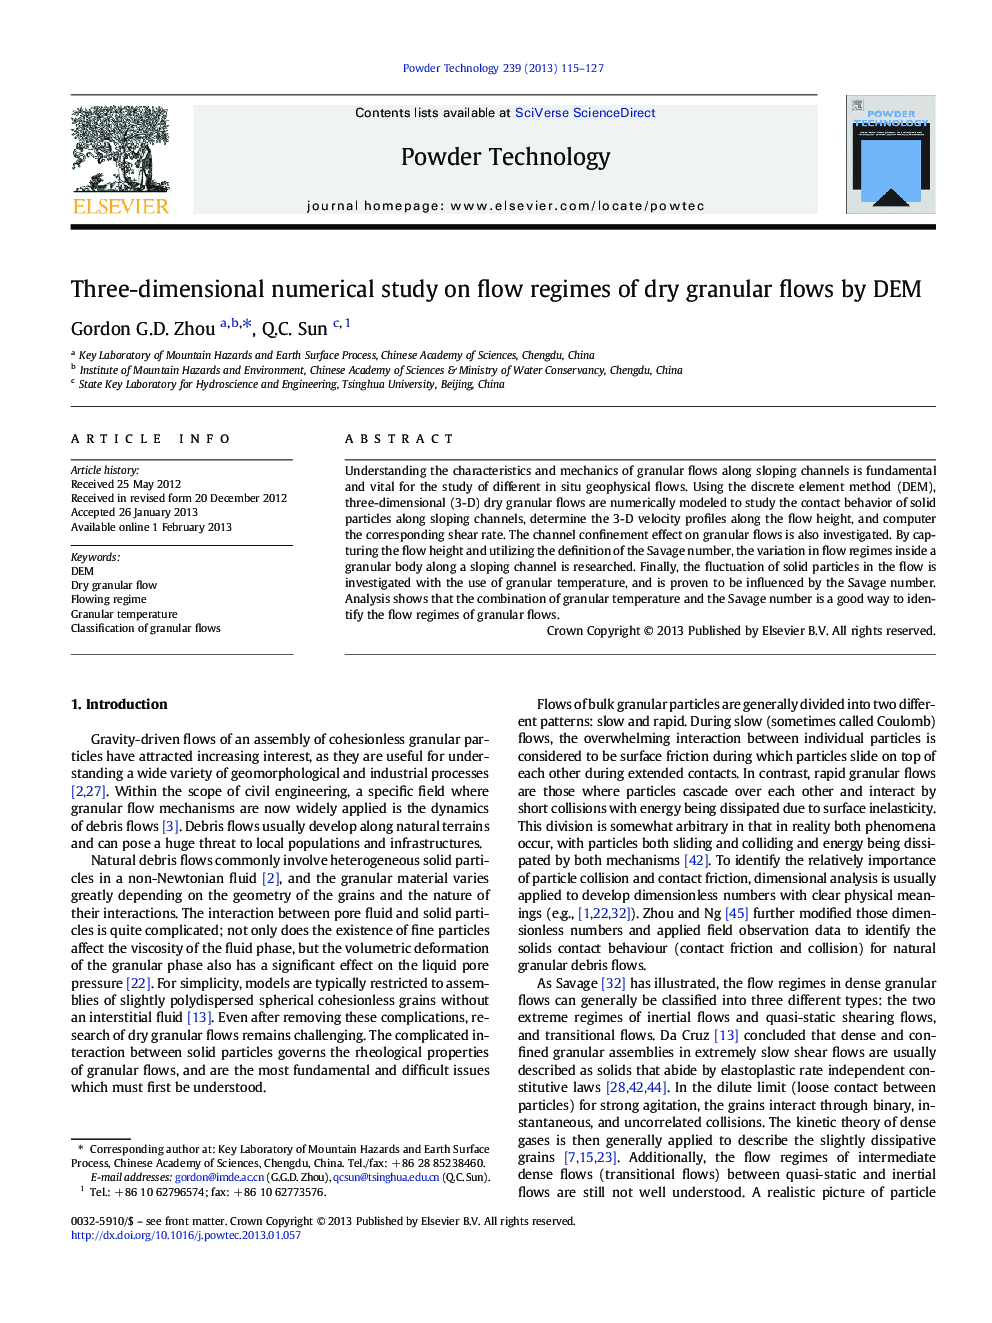 Three-dimensional numerical study on flow regimes of dry granular flows by DEM